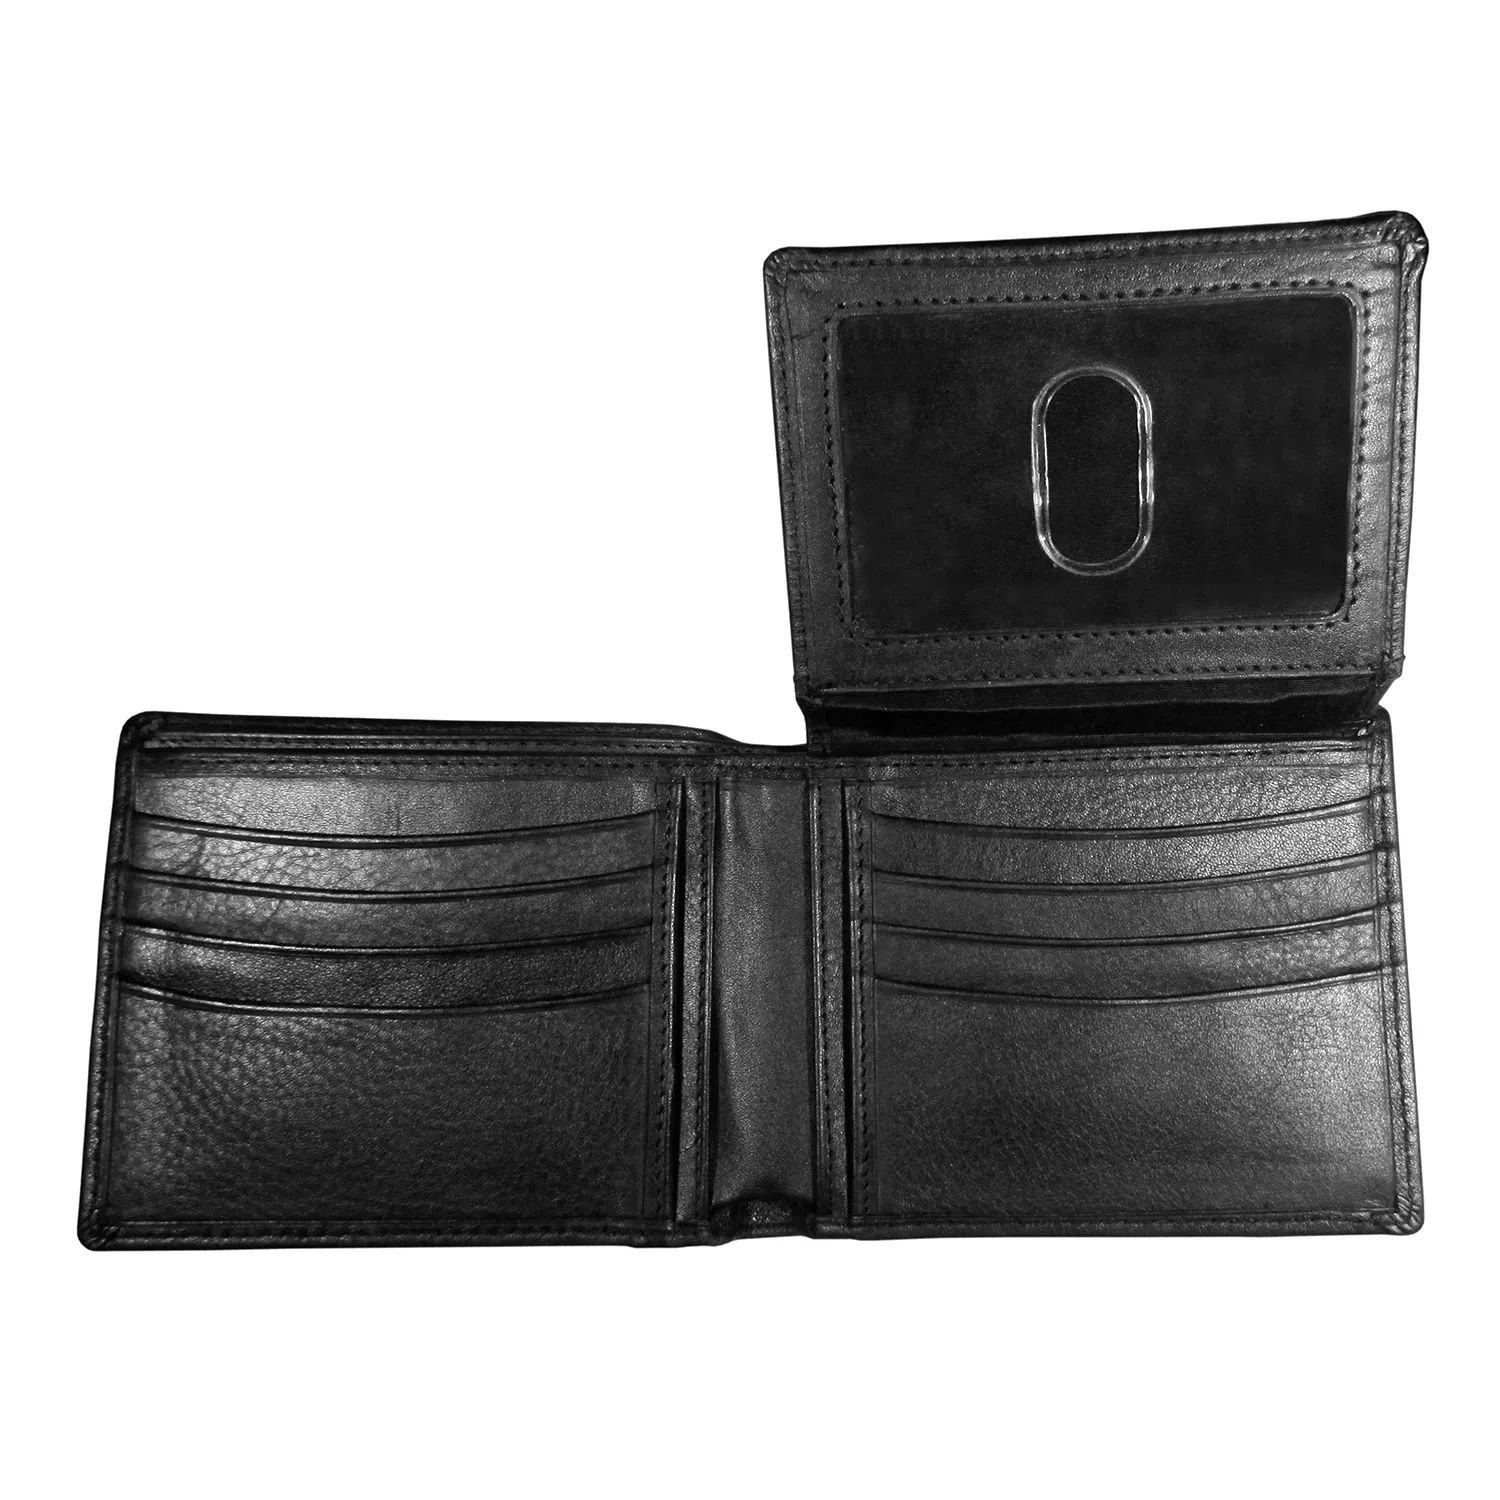 кожаный кошелек в три сложения chicago blackhawks nhl Мужской кошелек двойного сложения Chicago Blackhawks